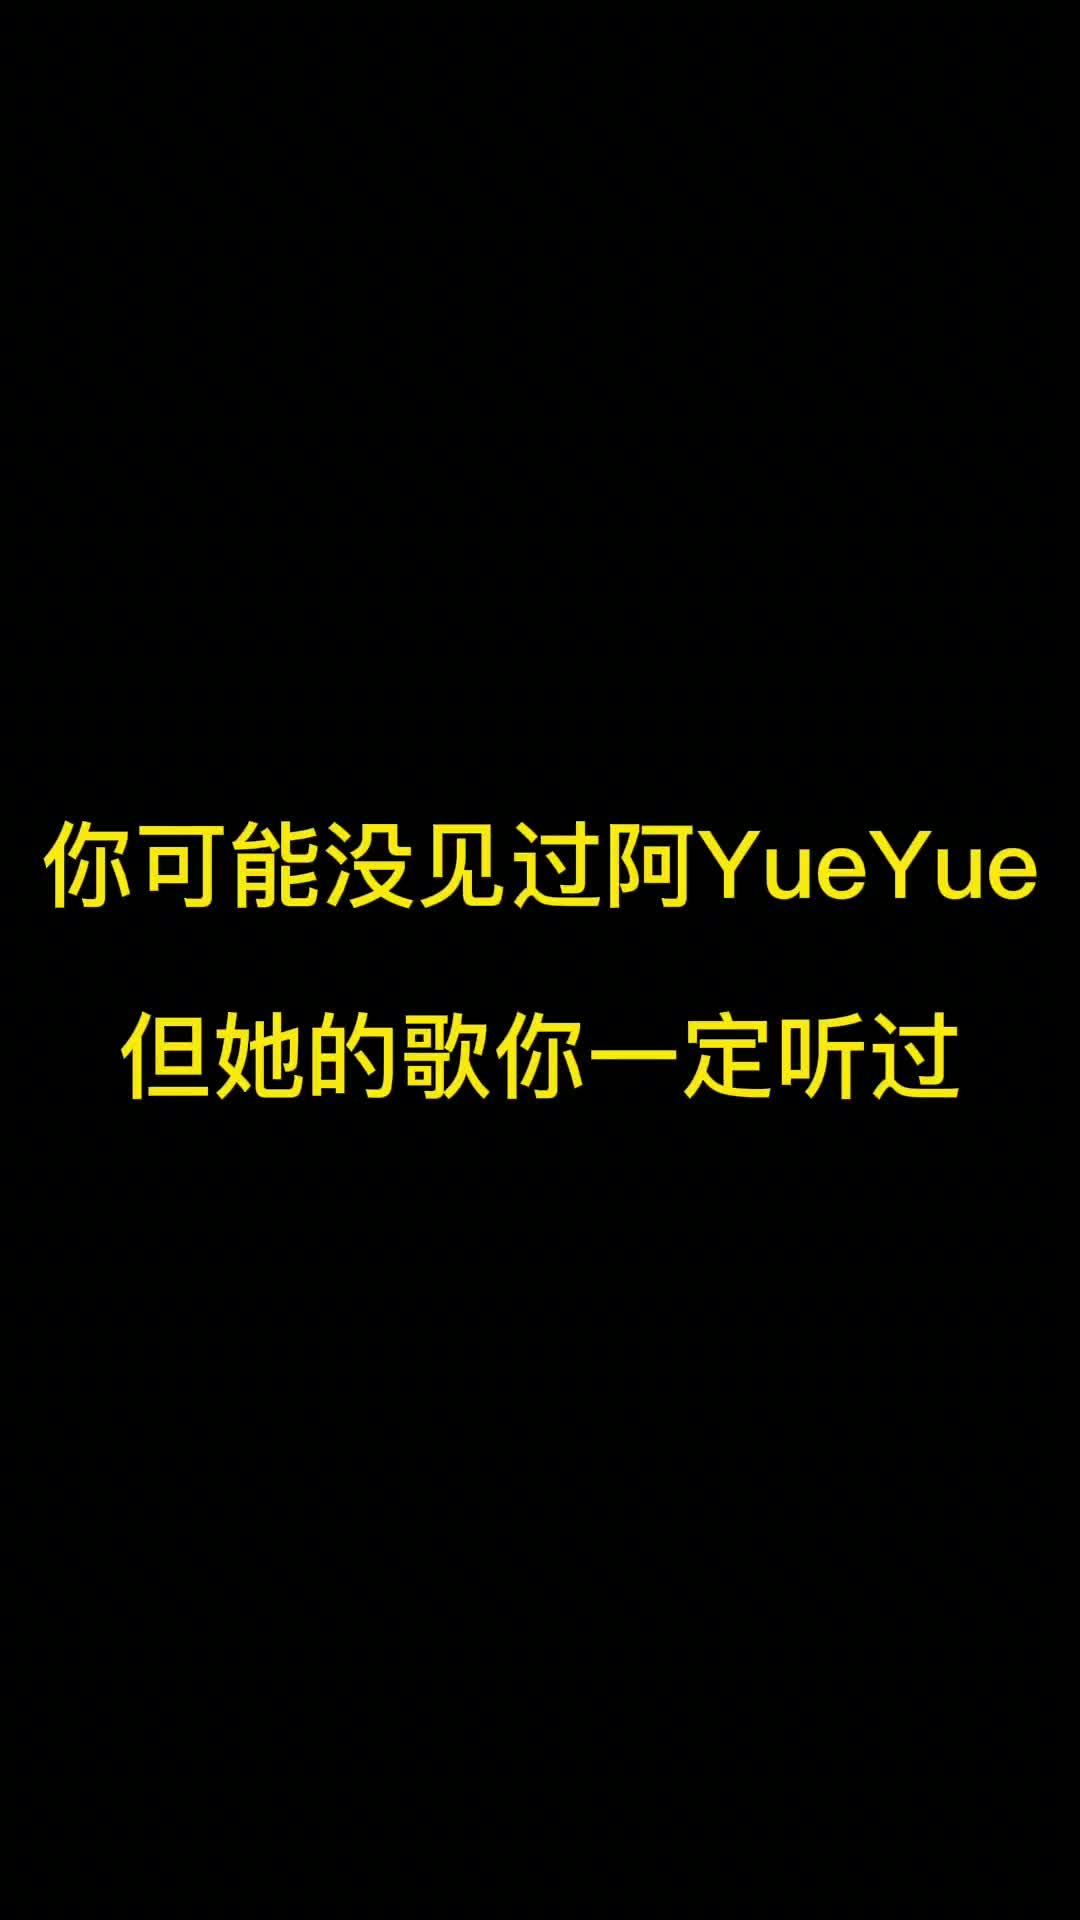 阿YueYue的歌真的很适合装剧的bgm，抖音上的很多古风配歌既然很多都是她唱的。#抖音热歌 #音乐推荐 #阿yueyue #古风歌曲推荐